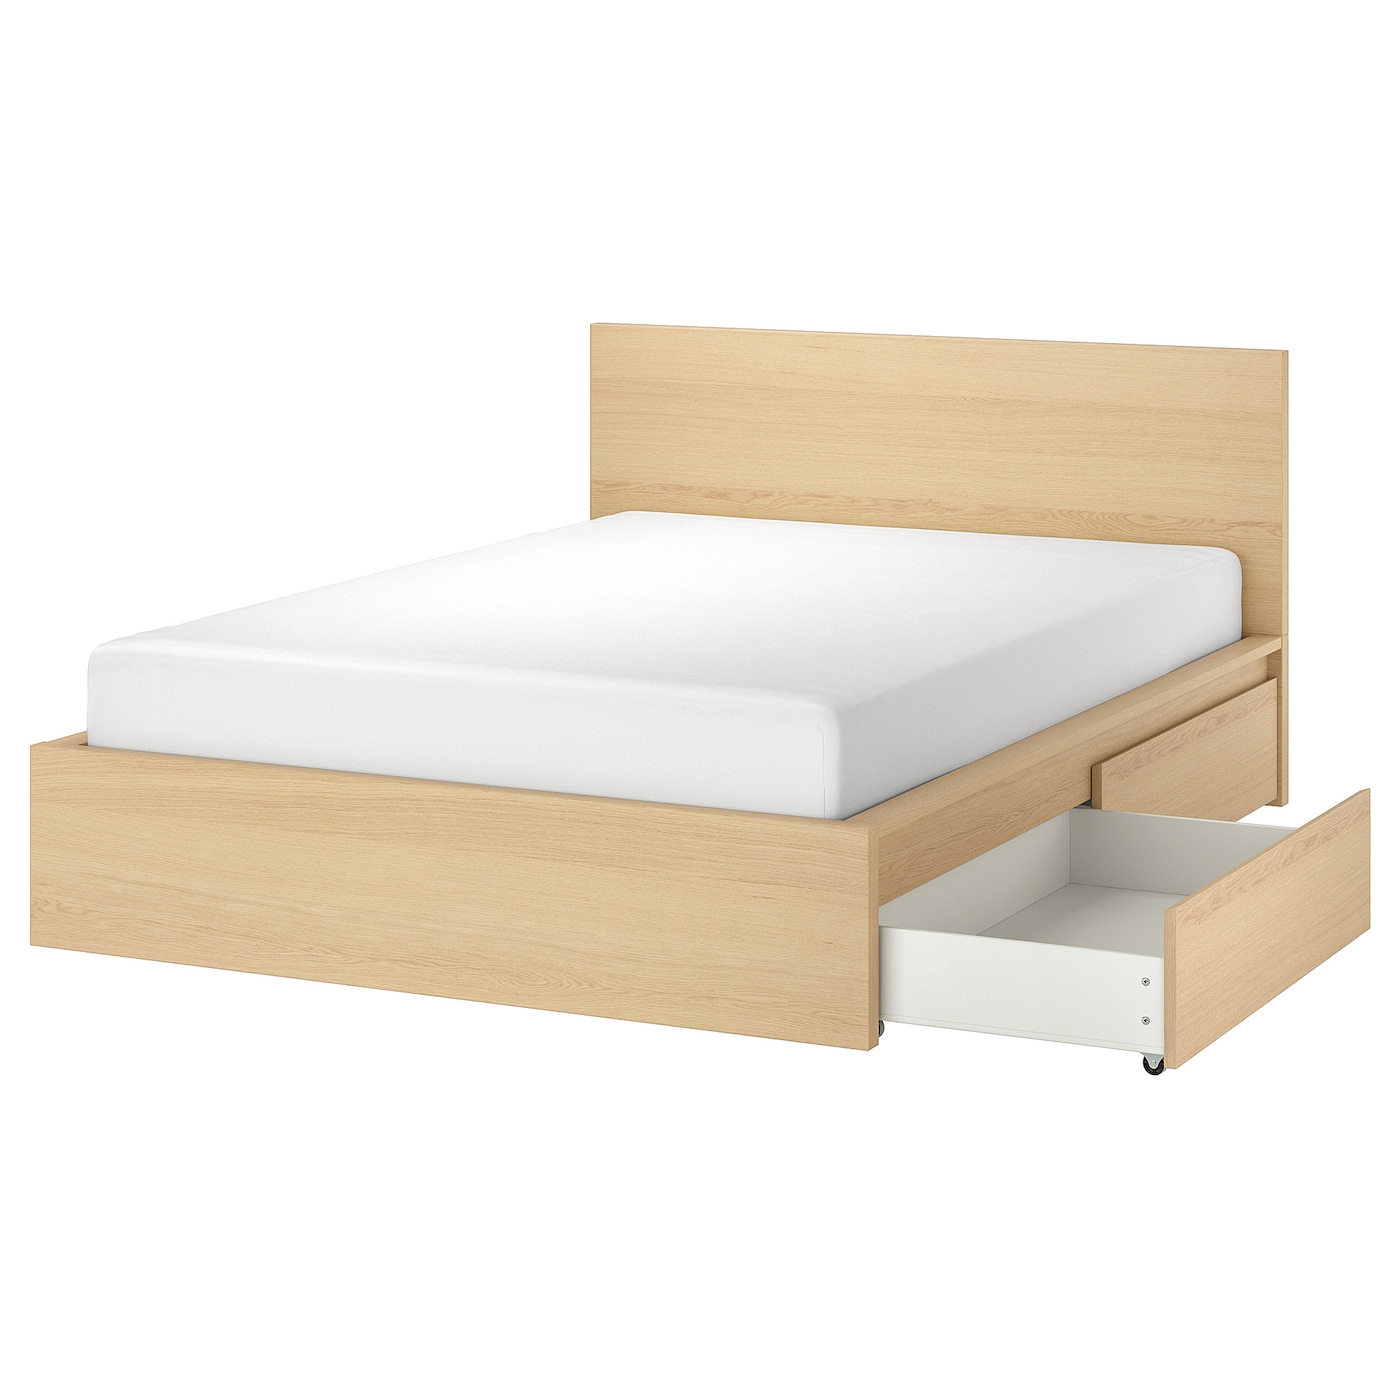 Каркас кровати с 4 ящиками для хранения - IKEA MALM, 200х160 см, под беленый дуб, МАЛЬМ ИКЕА